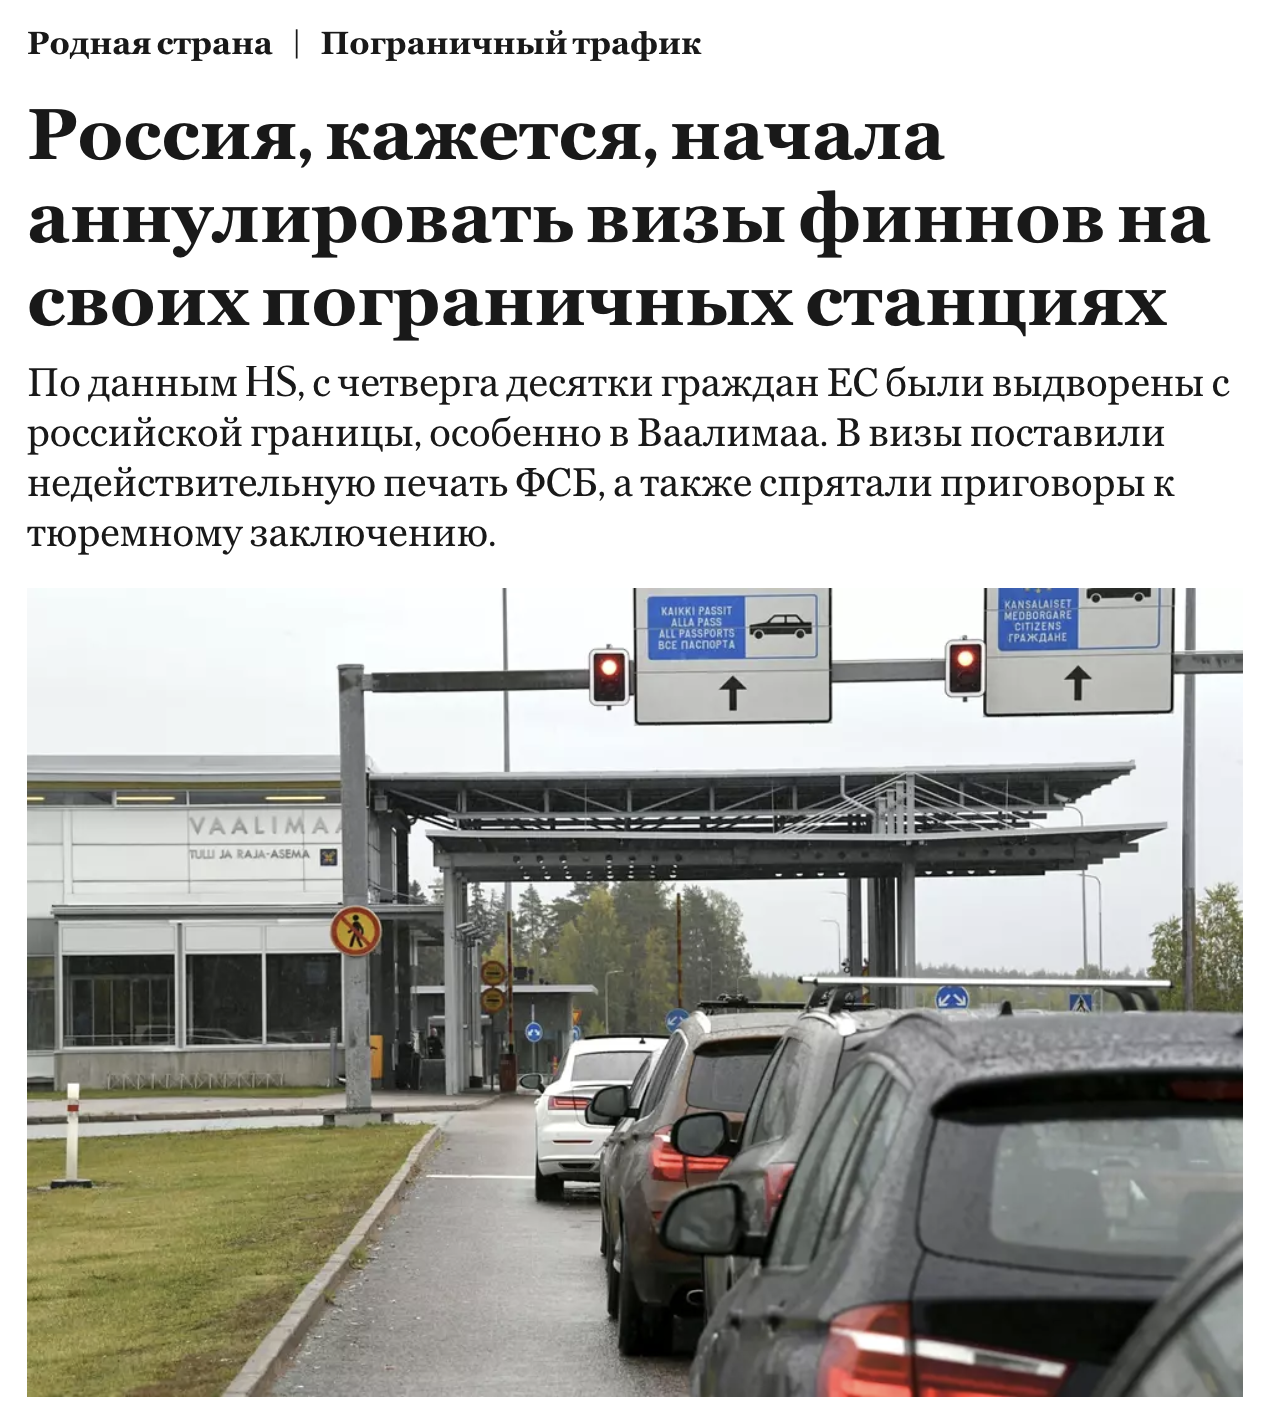 Российские пограничники начали аннулировать визы финнам